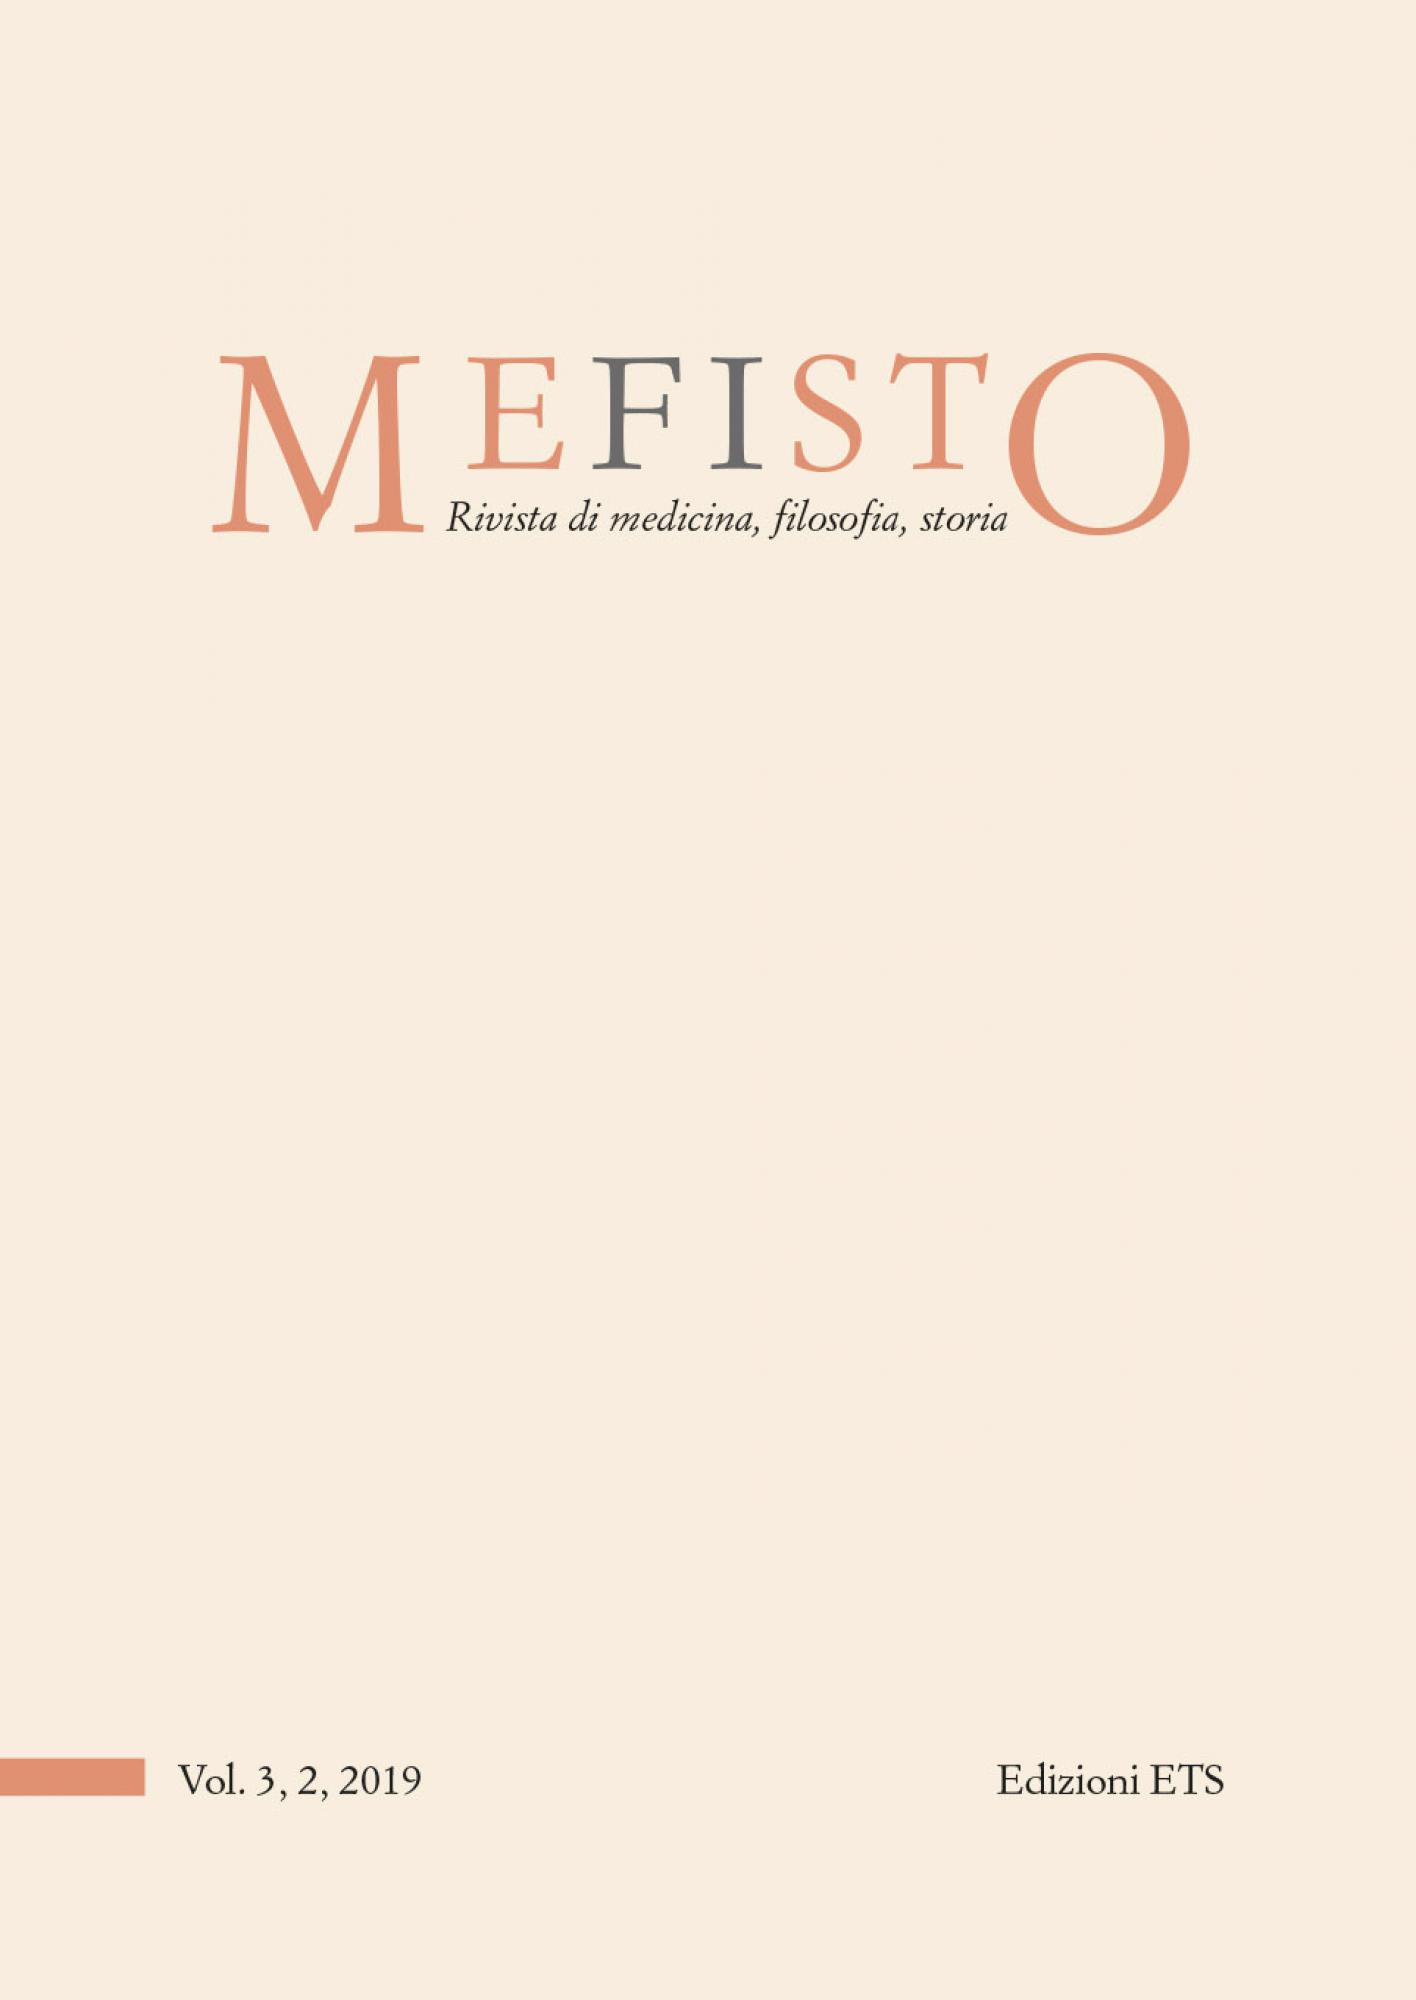 MEFISTO. Rivista di medicina, filosofia, storia.Musei, memorie e narrazioni per la salute mentale - Vol. 3, 2, 2019 (già Medicina&Storia)